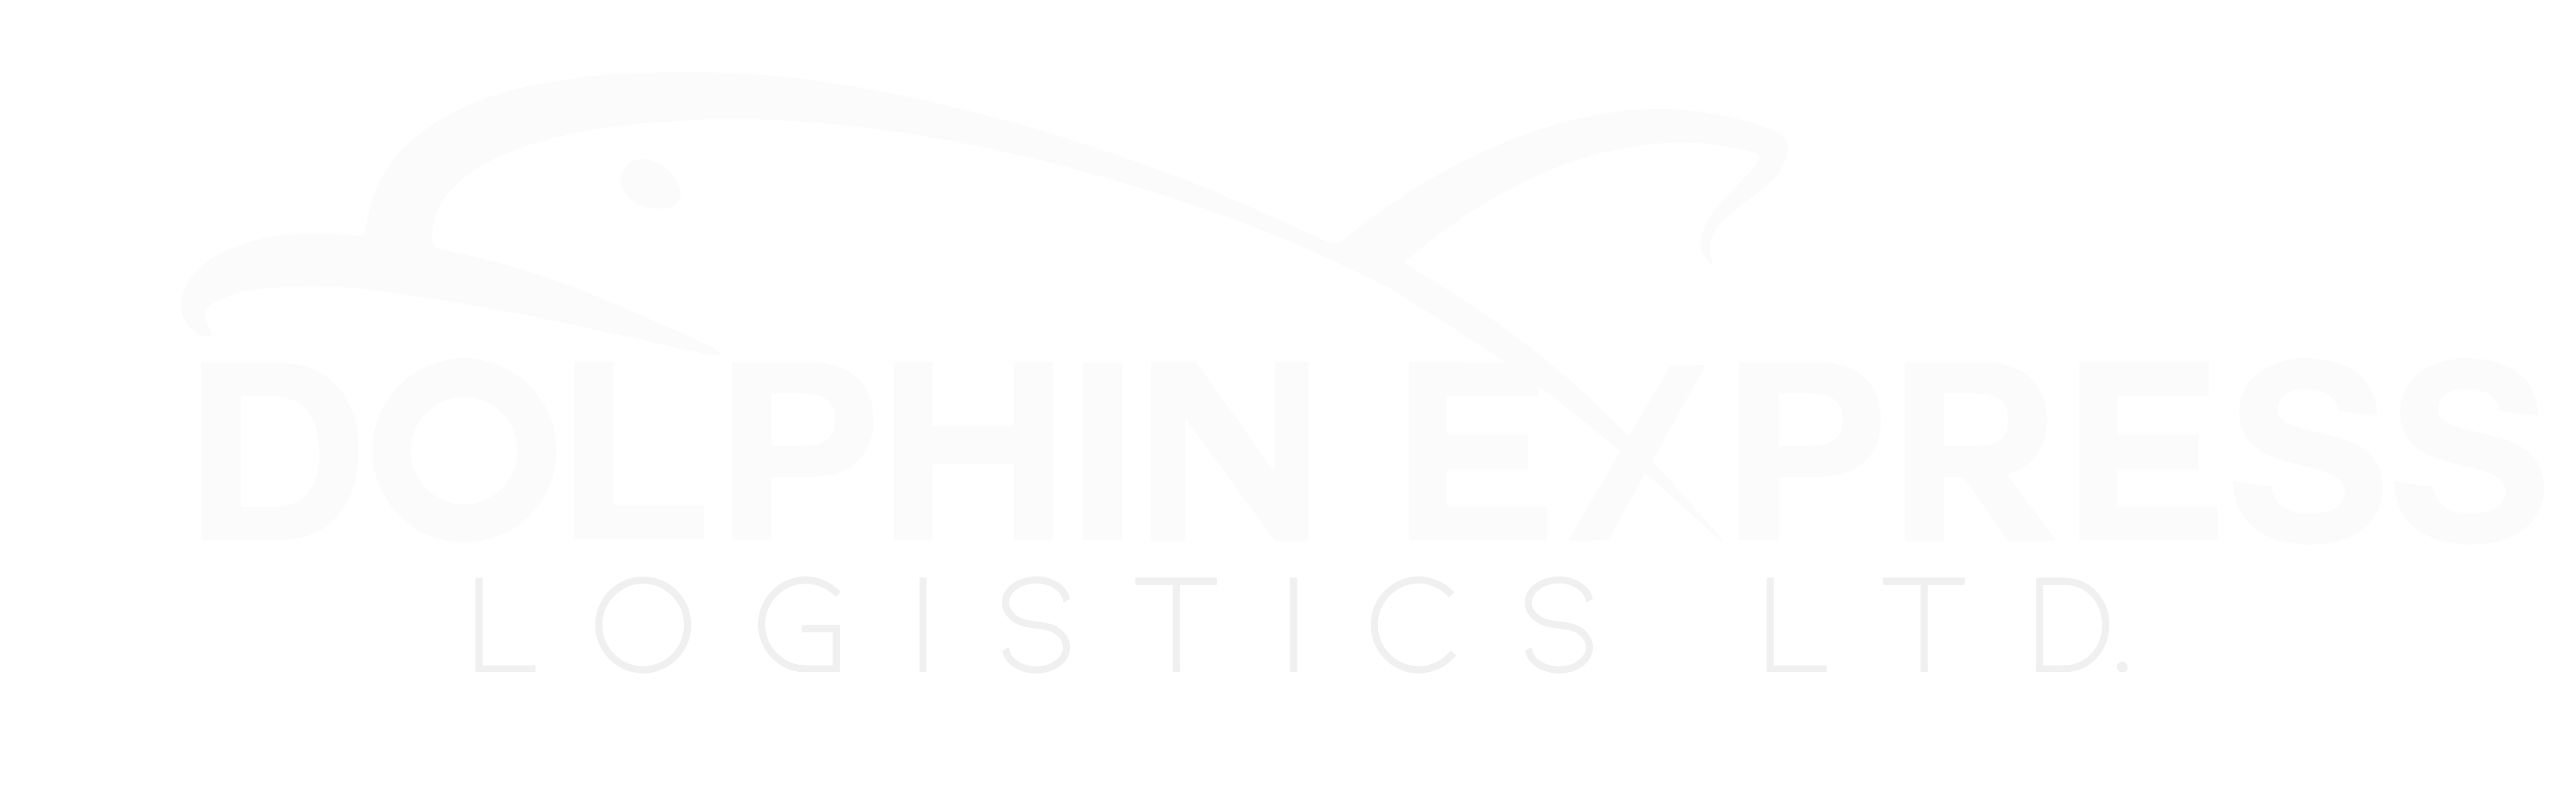 My Dolphin Express & Logistics LTD